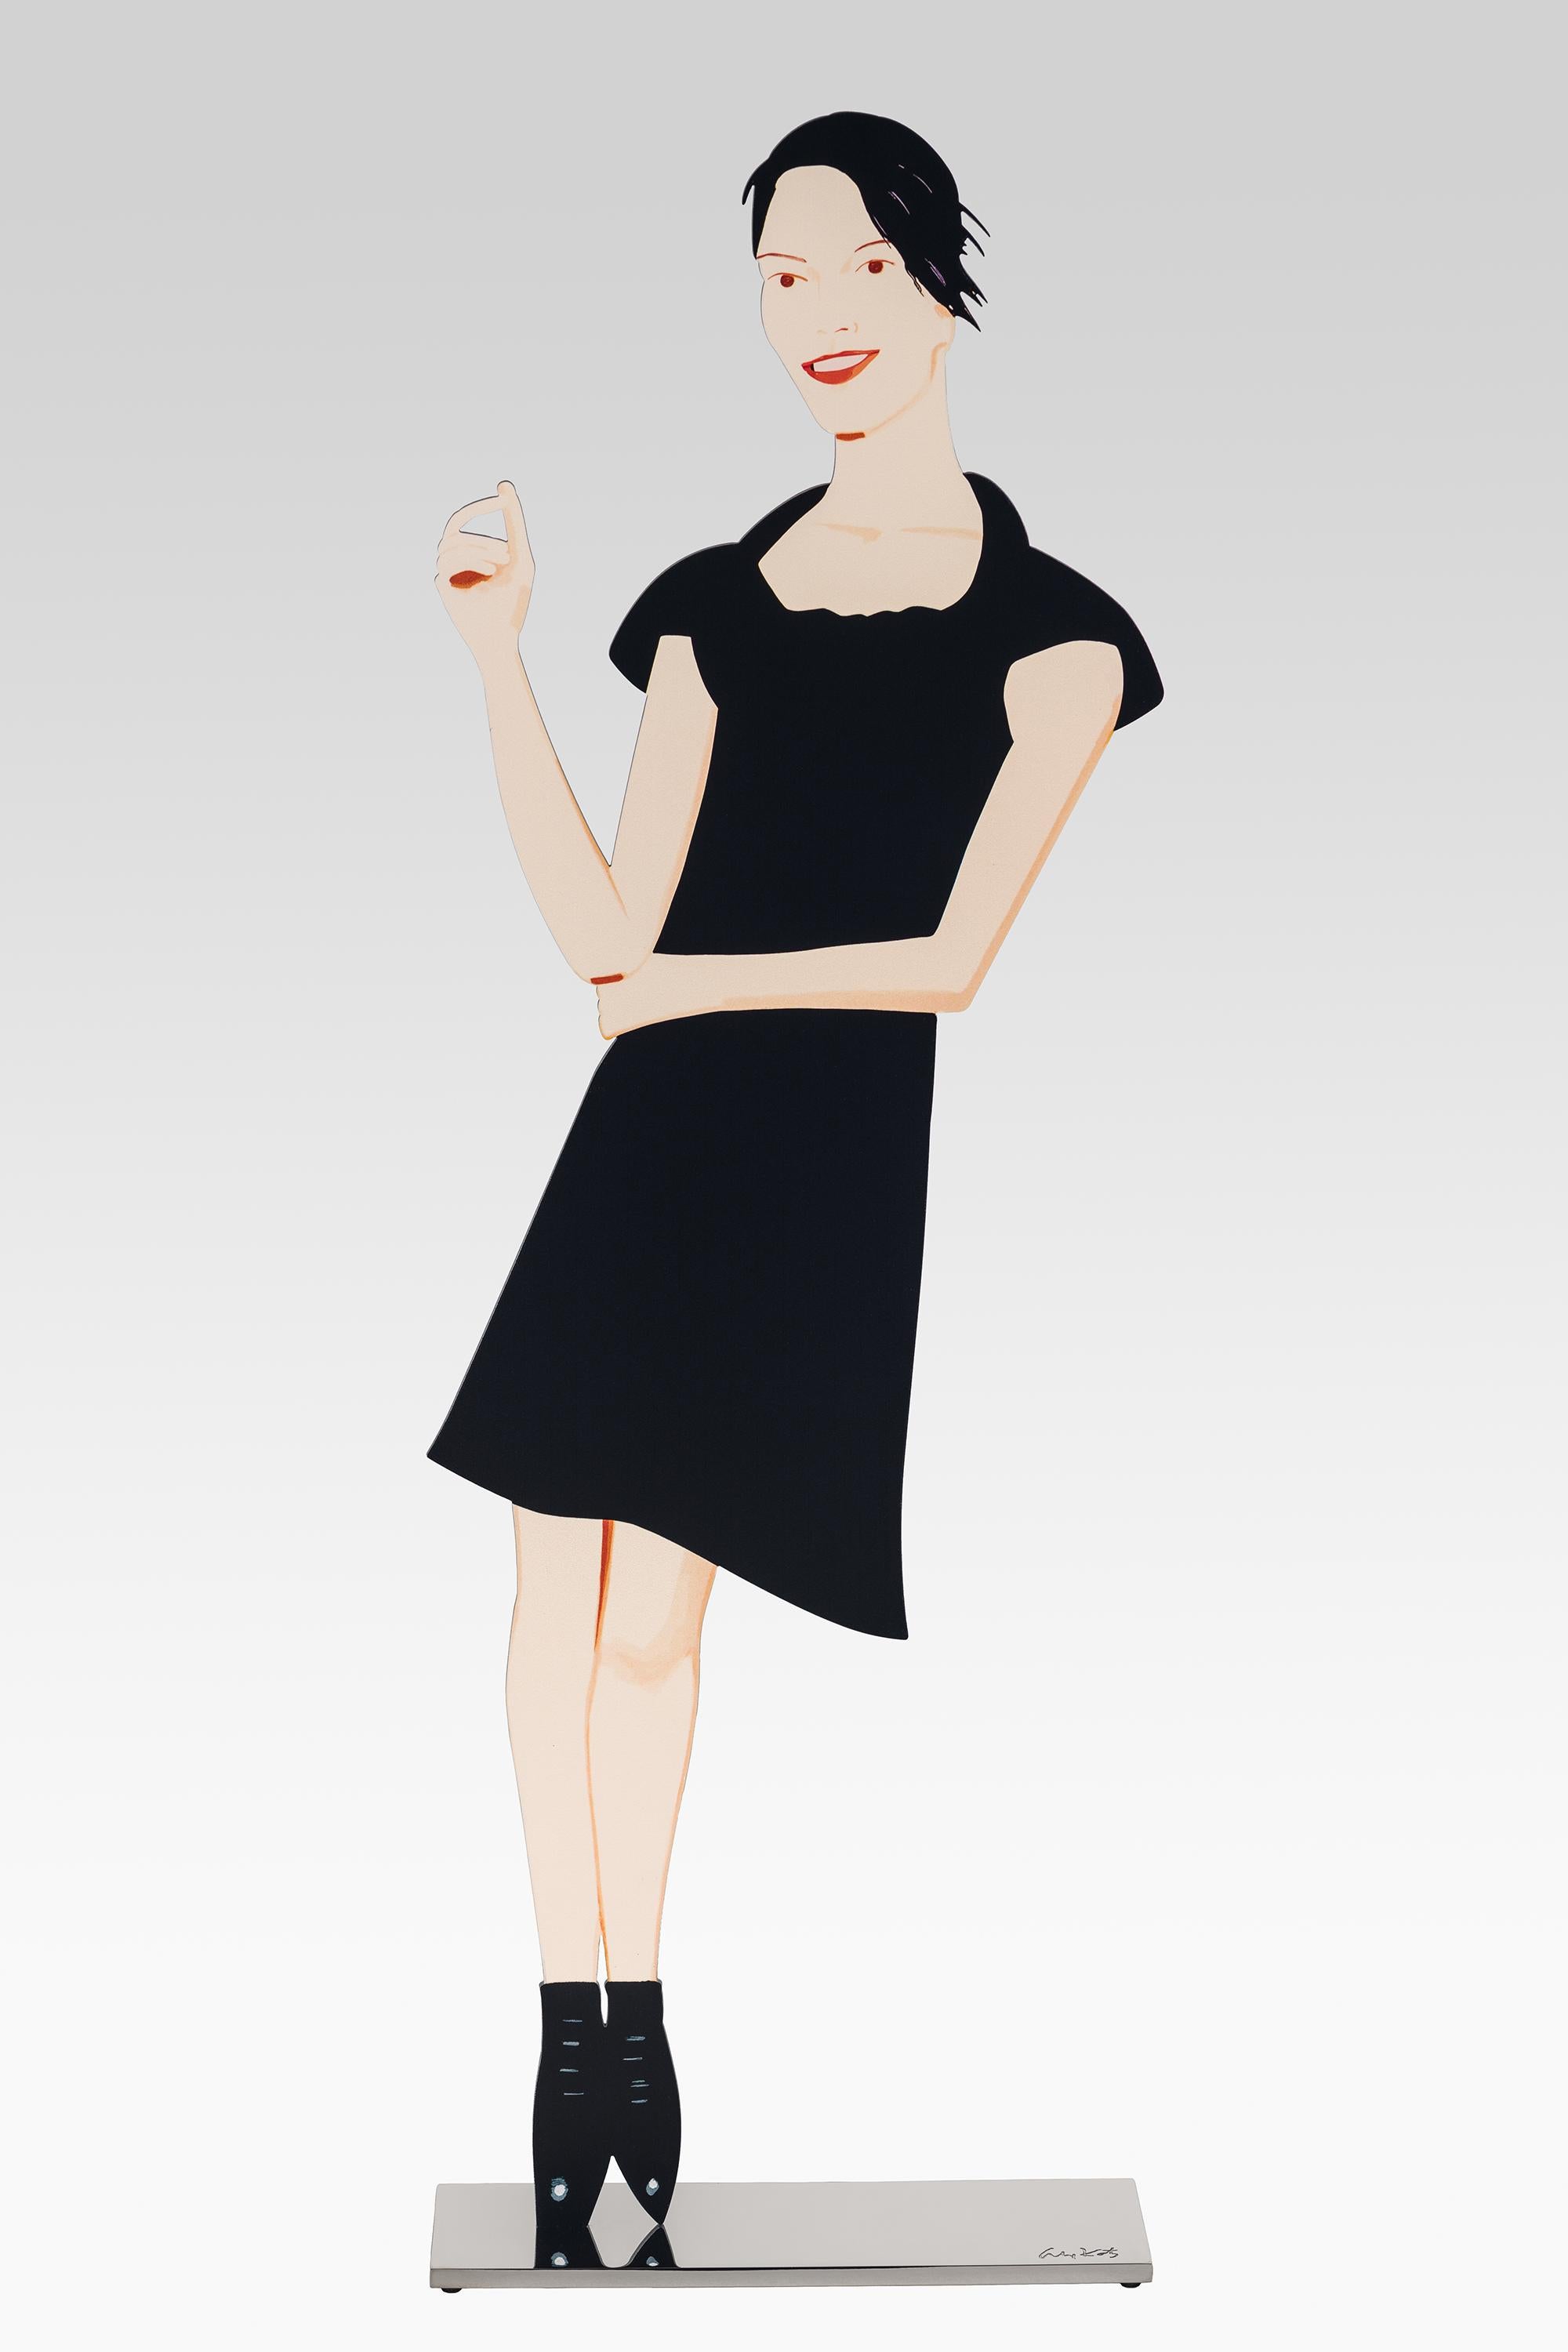 Les sculptures "Black Dress" d'Alex Katz sont plus que des sculptures figuratives. Elles sont un hommage à l'élégance, à la mode et au corps féminin. Cette découpe est réalisée en aluminium thermolaqué et repose sur un socle en aluminium. 58 x 18